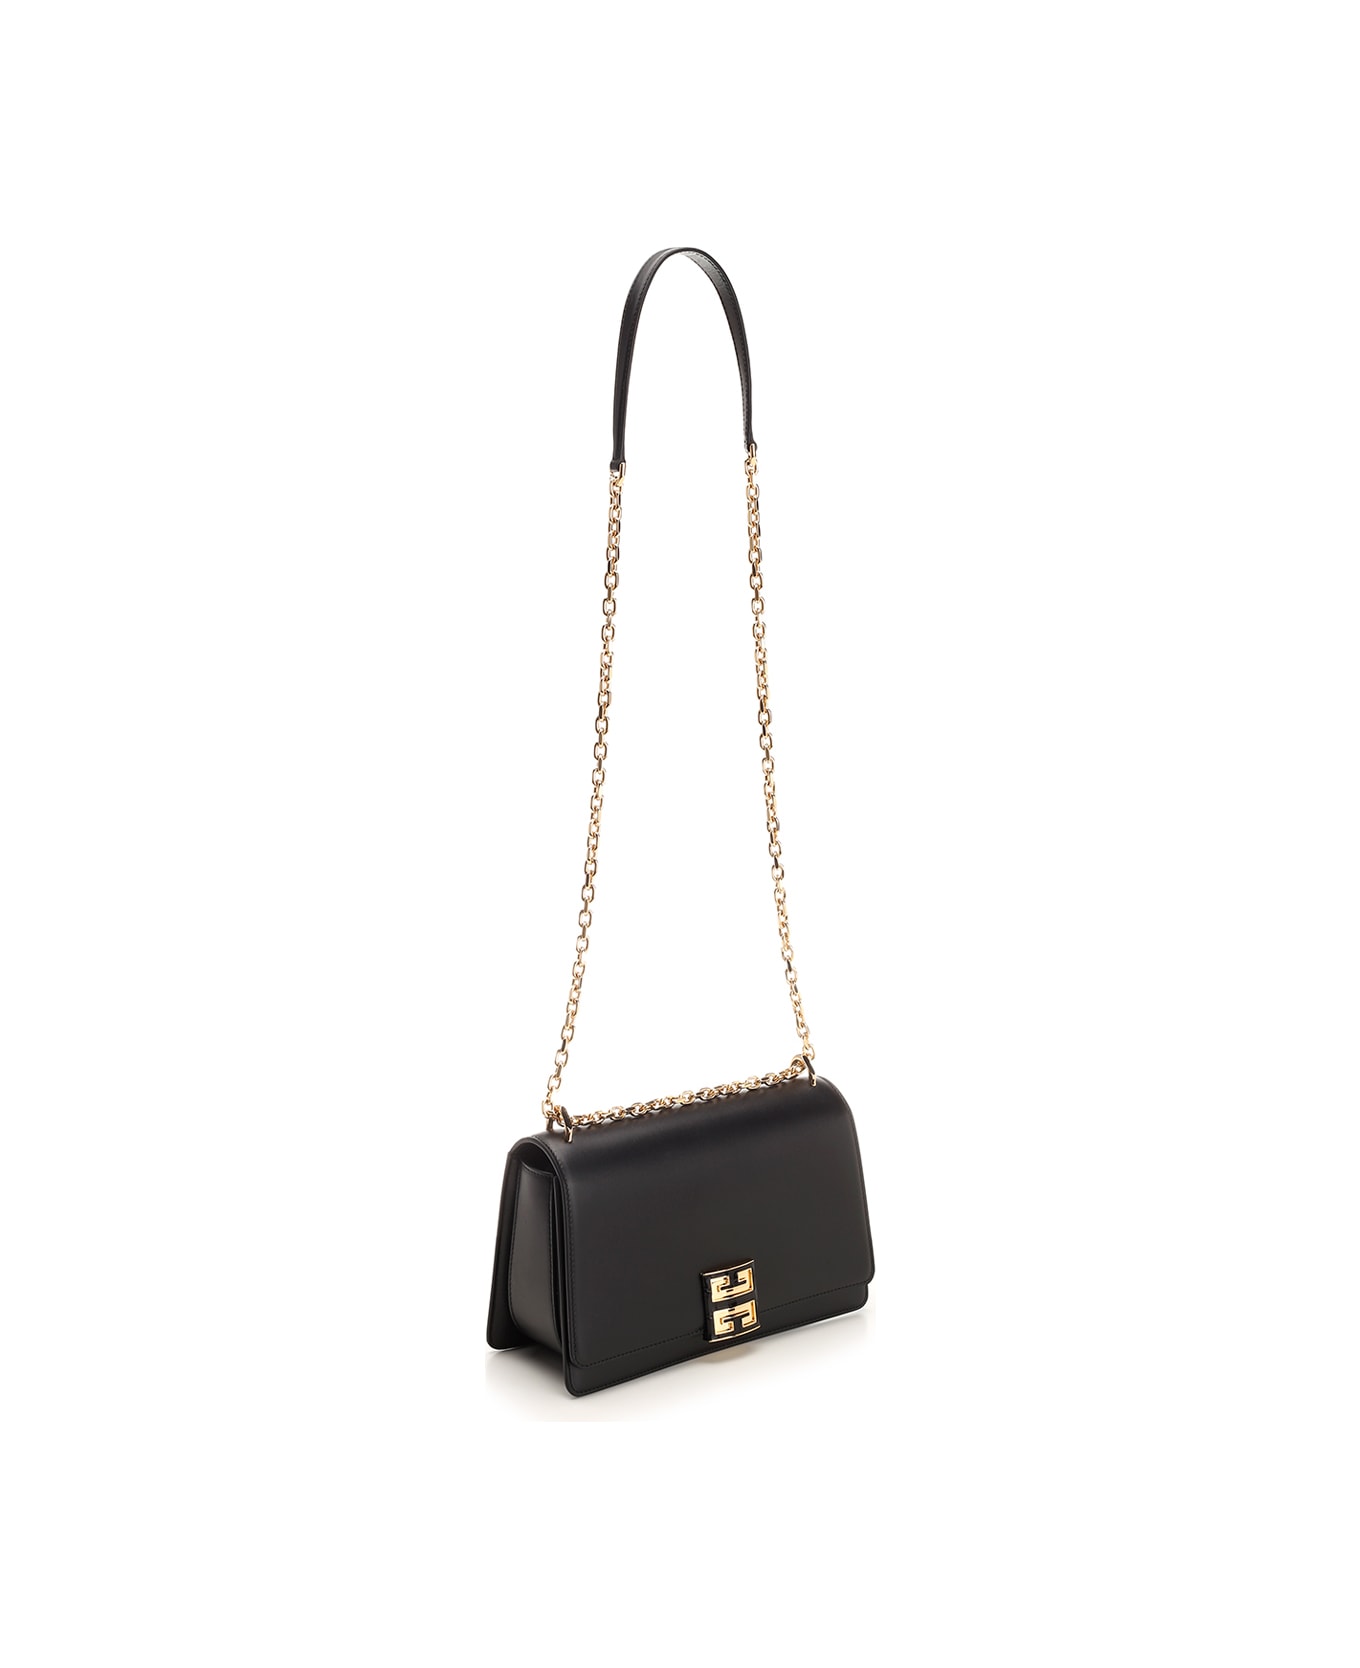 Givenchy 4g Medium Shoulder Bag - Black